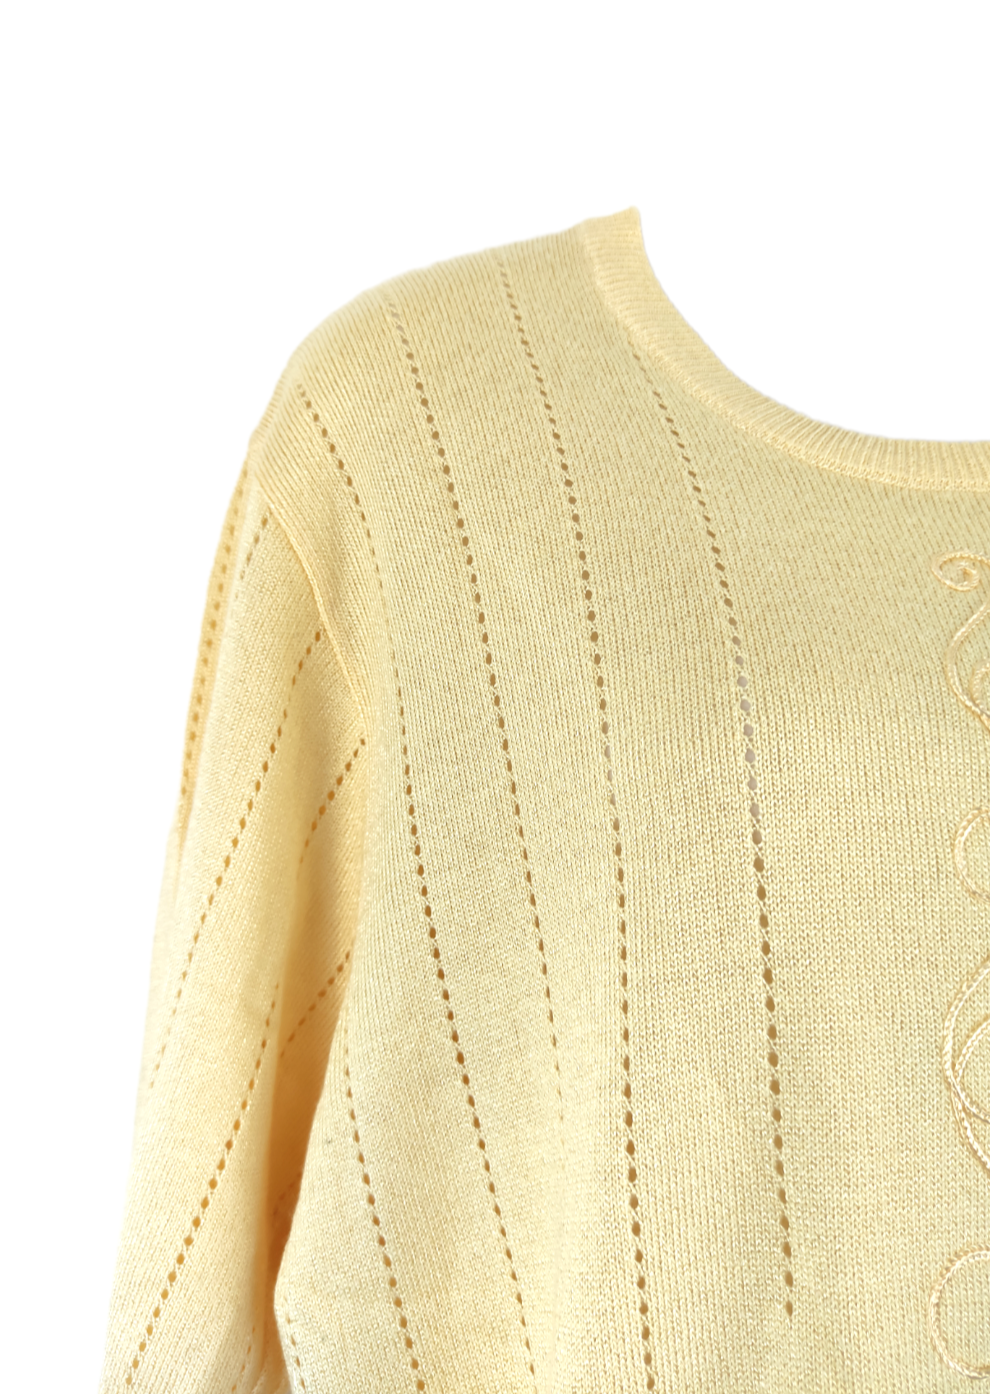 Κοντομάνικη, Πλεκτή Γυναικεία Μπλούζα MENKE σε Παλ Κίτρινο χρώμα (Large)